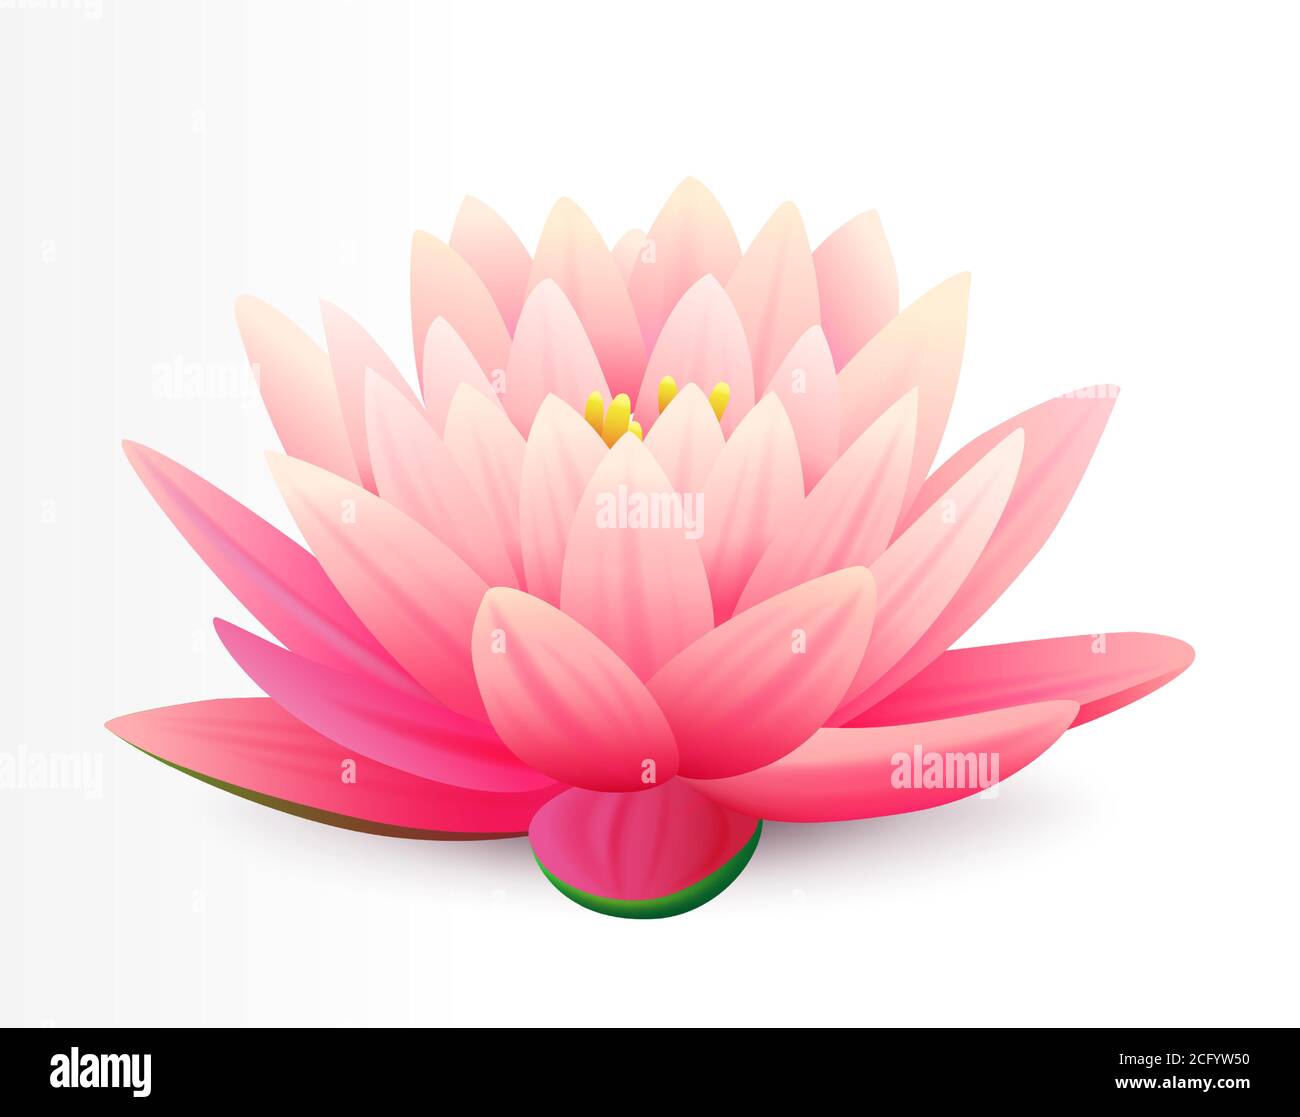 Bello realistico fiore rosa di loto isolato su sfondo bianco, pianta d'acqua, illustrazione vettoriale. Illustrazione Vettoriale